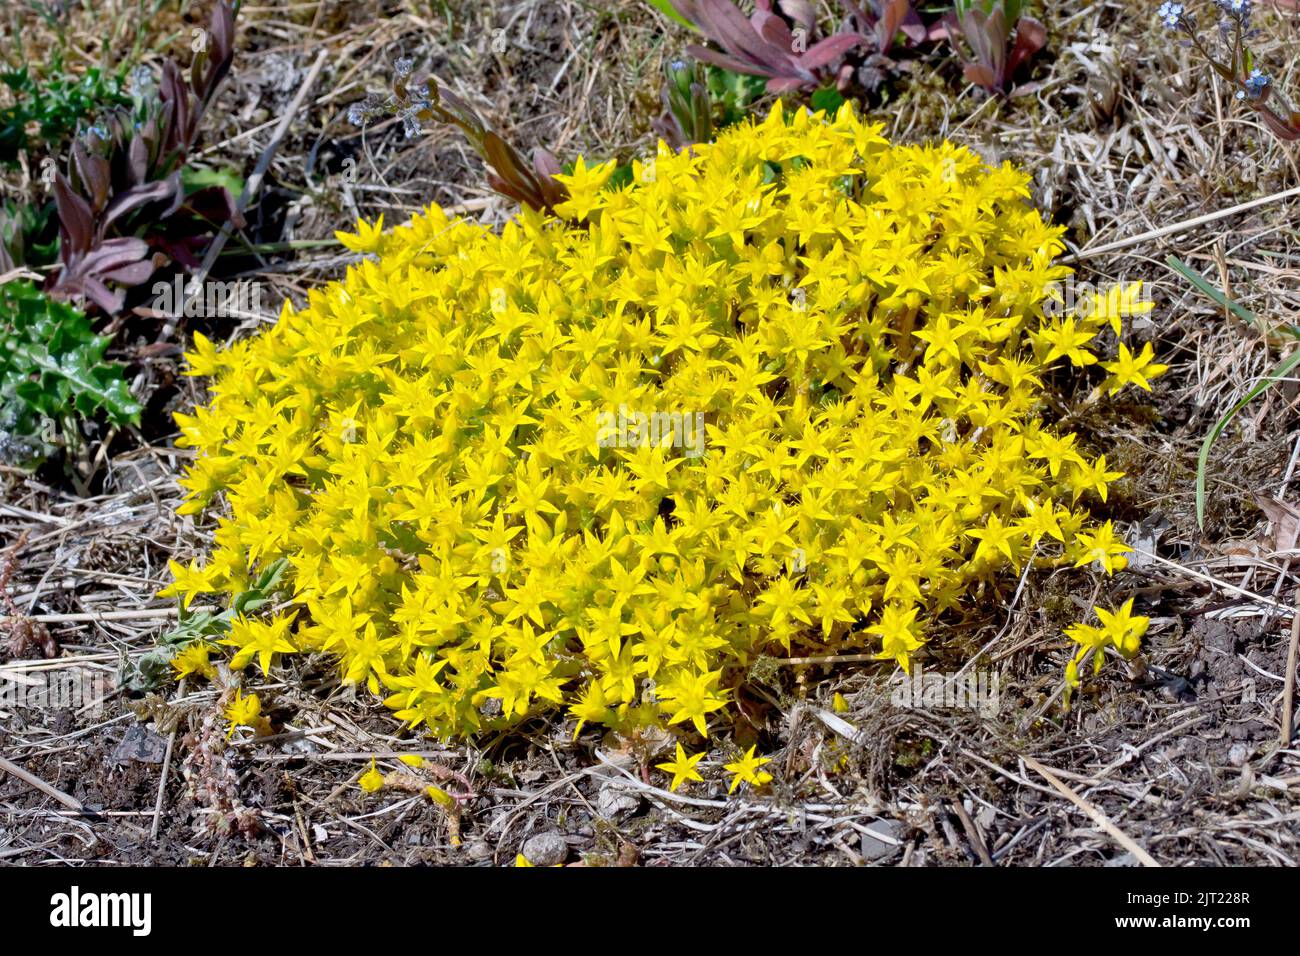 Beißender Stonecrop oder Wallpepper (Sedum acre), Nahaufnahme eines Fleckens der niedrig wachsenden gelben Blüten der Sukulente, die sich über ein Stück rauem Boden ausbreiten. Stockfoto